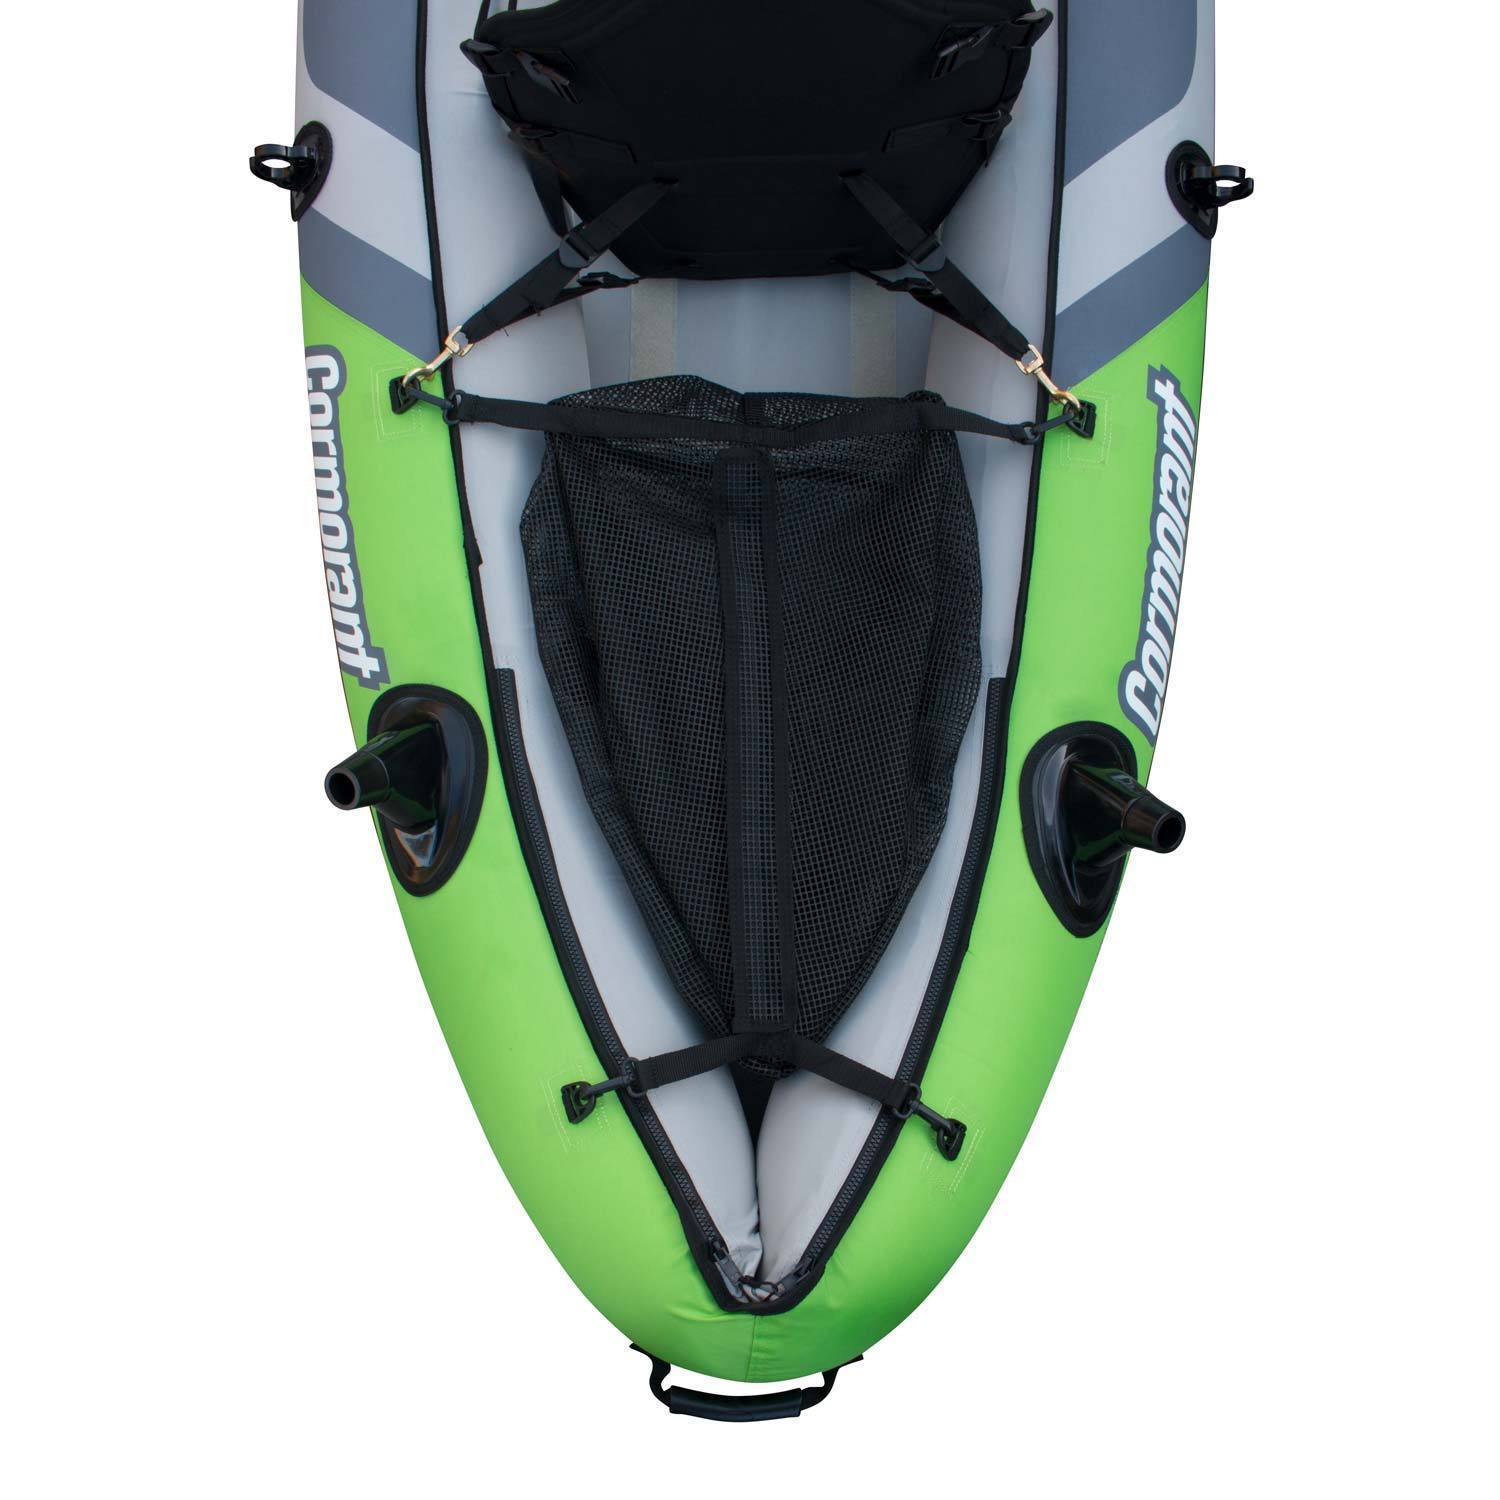 Elkton Outdoors Comorant 2 Person Kayak, 10 Foot Inflatable Fishing Kayak, Full Kit! - image 11 of 11